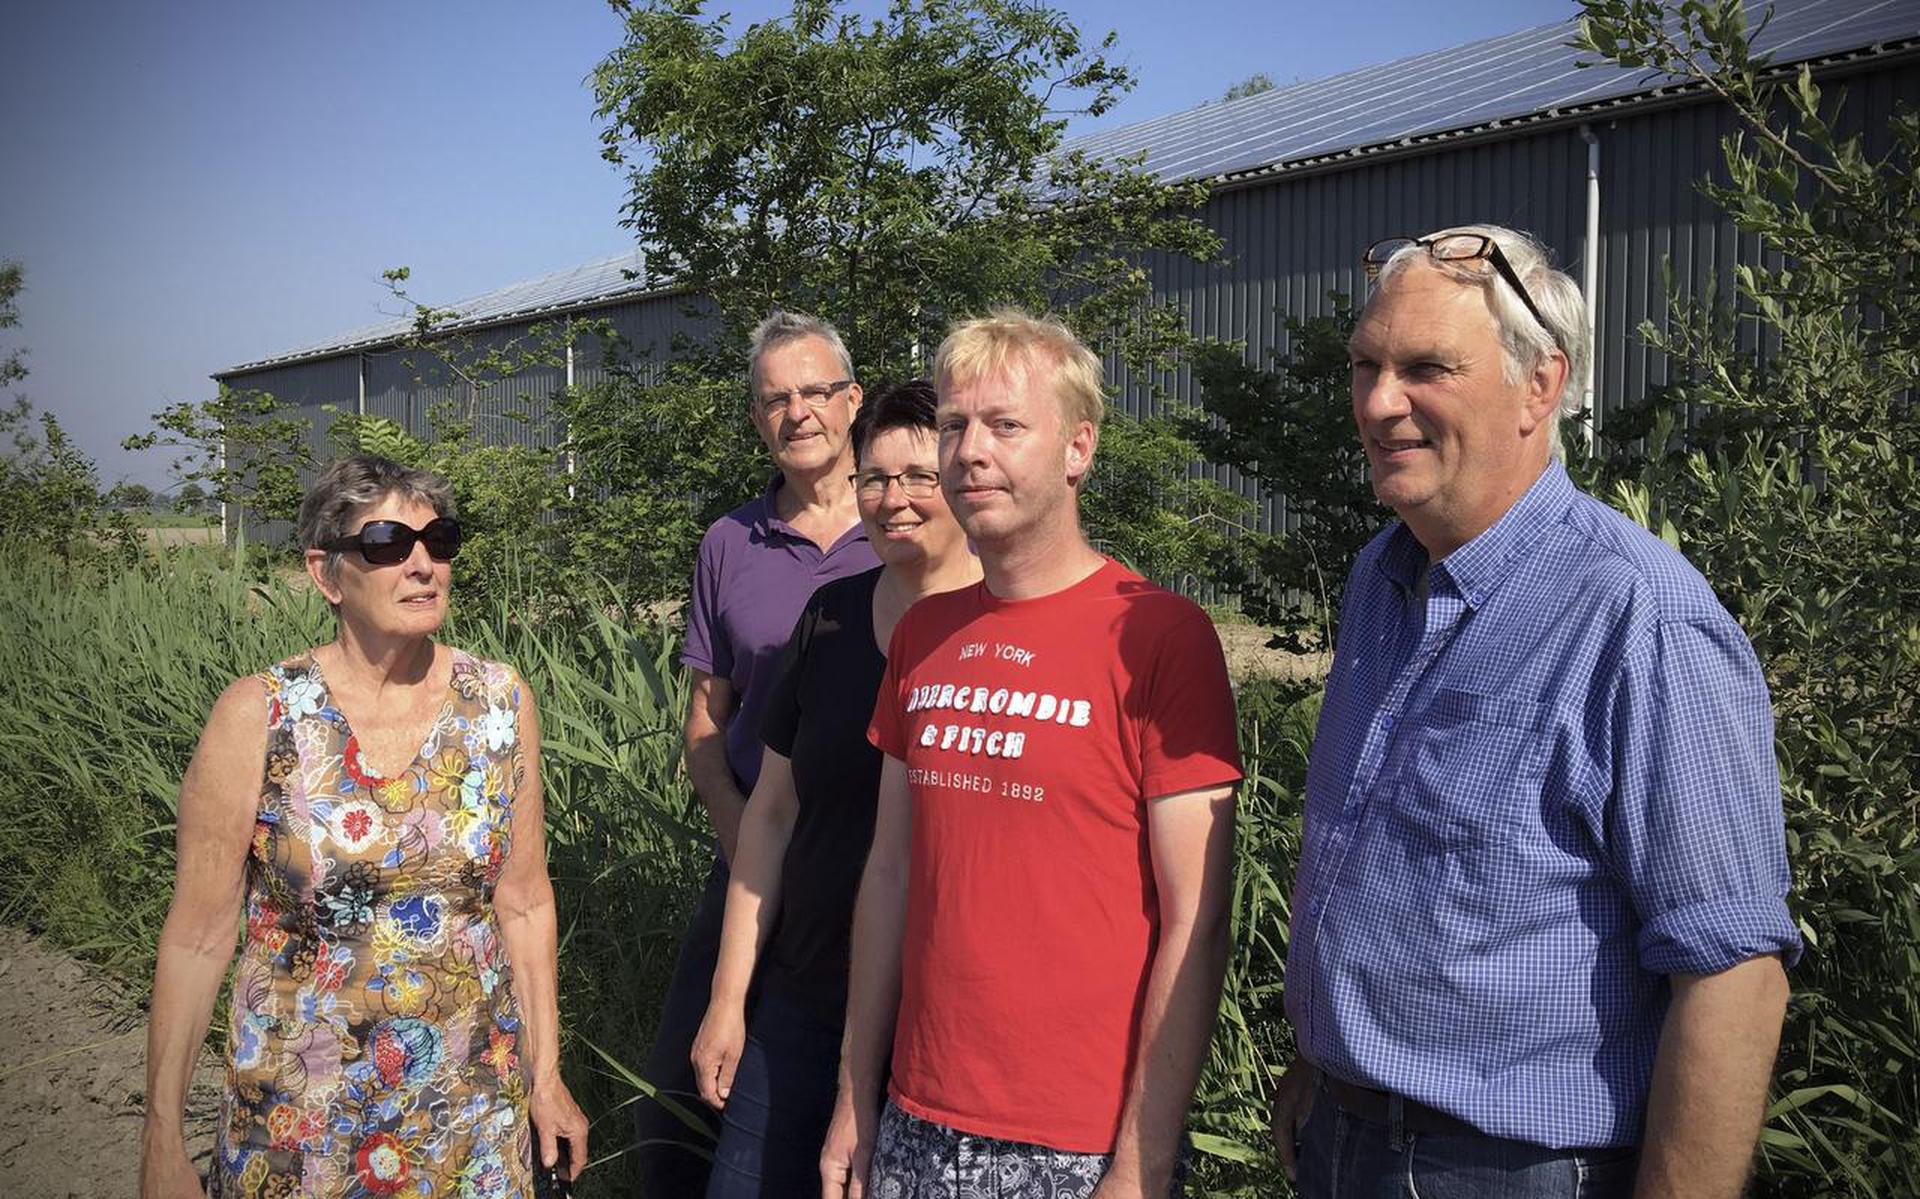 Een dak van een schuur in Zuurdijk ligt, op initiatief van de Hogelandster Energie Coöperatie, vol met zonnepanelen. Vlnr: Hennie Schoenmaker, Jan Hink, Siegrid Hekma, Martijn Oostenbrink en Ron Claassen. 